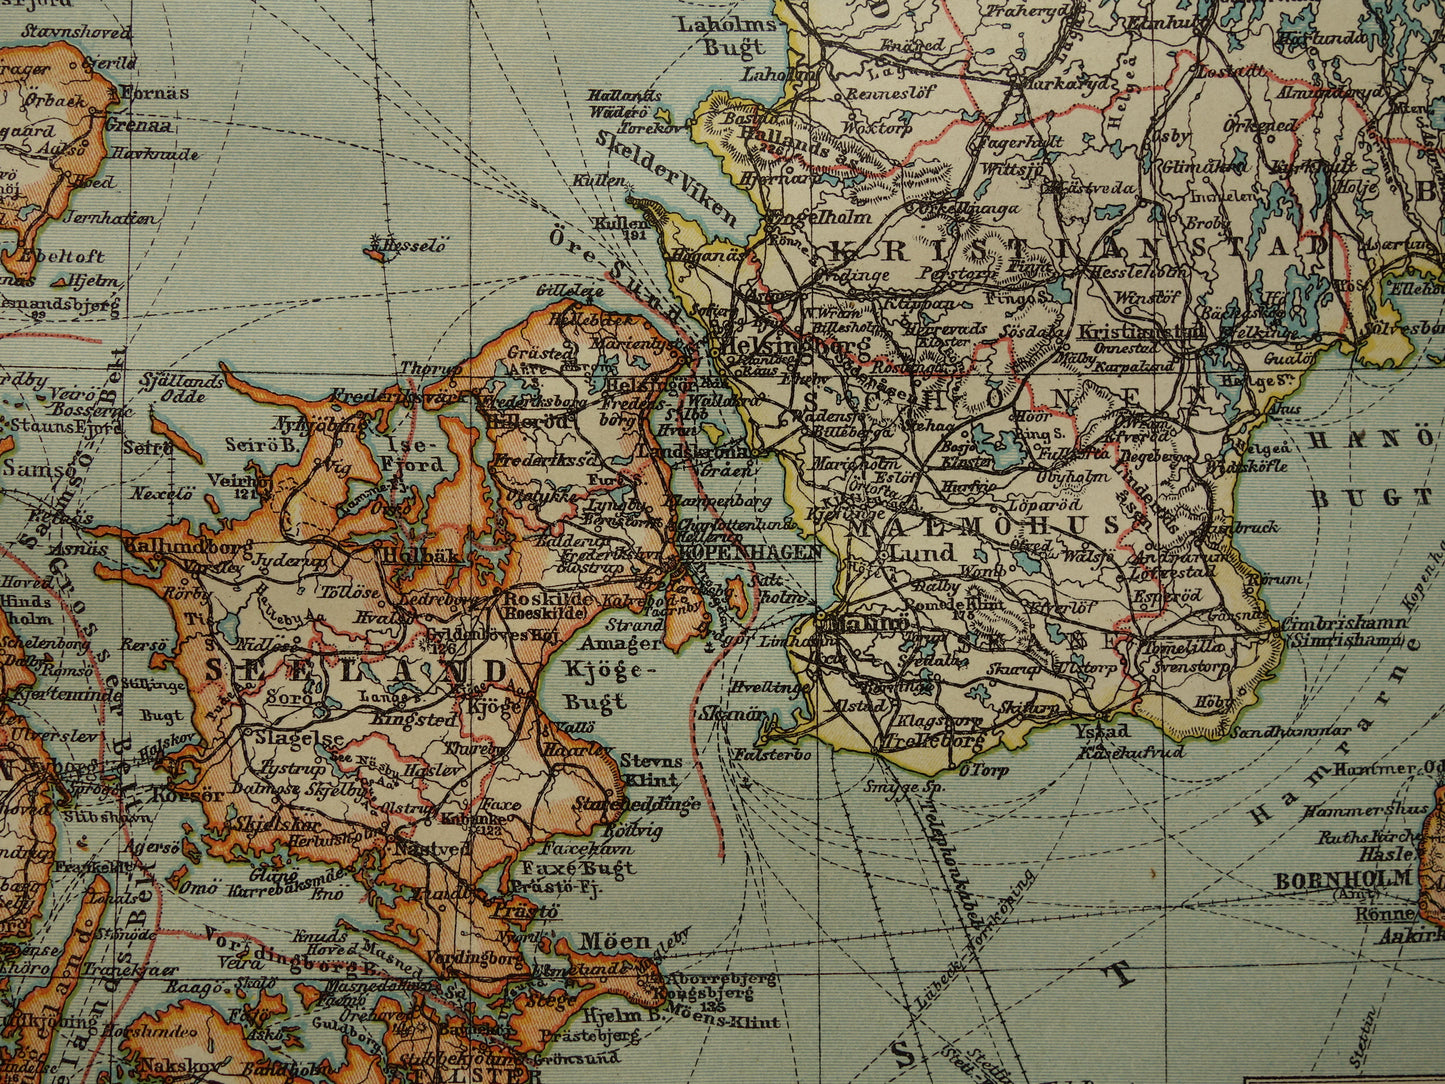 Vintage kaart van Denemarken 1908 originele antieke historische landkaart Denemarken en zuid Zweden